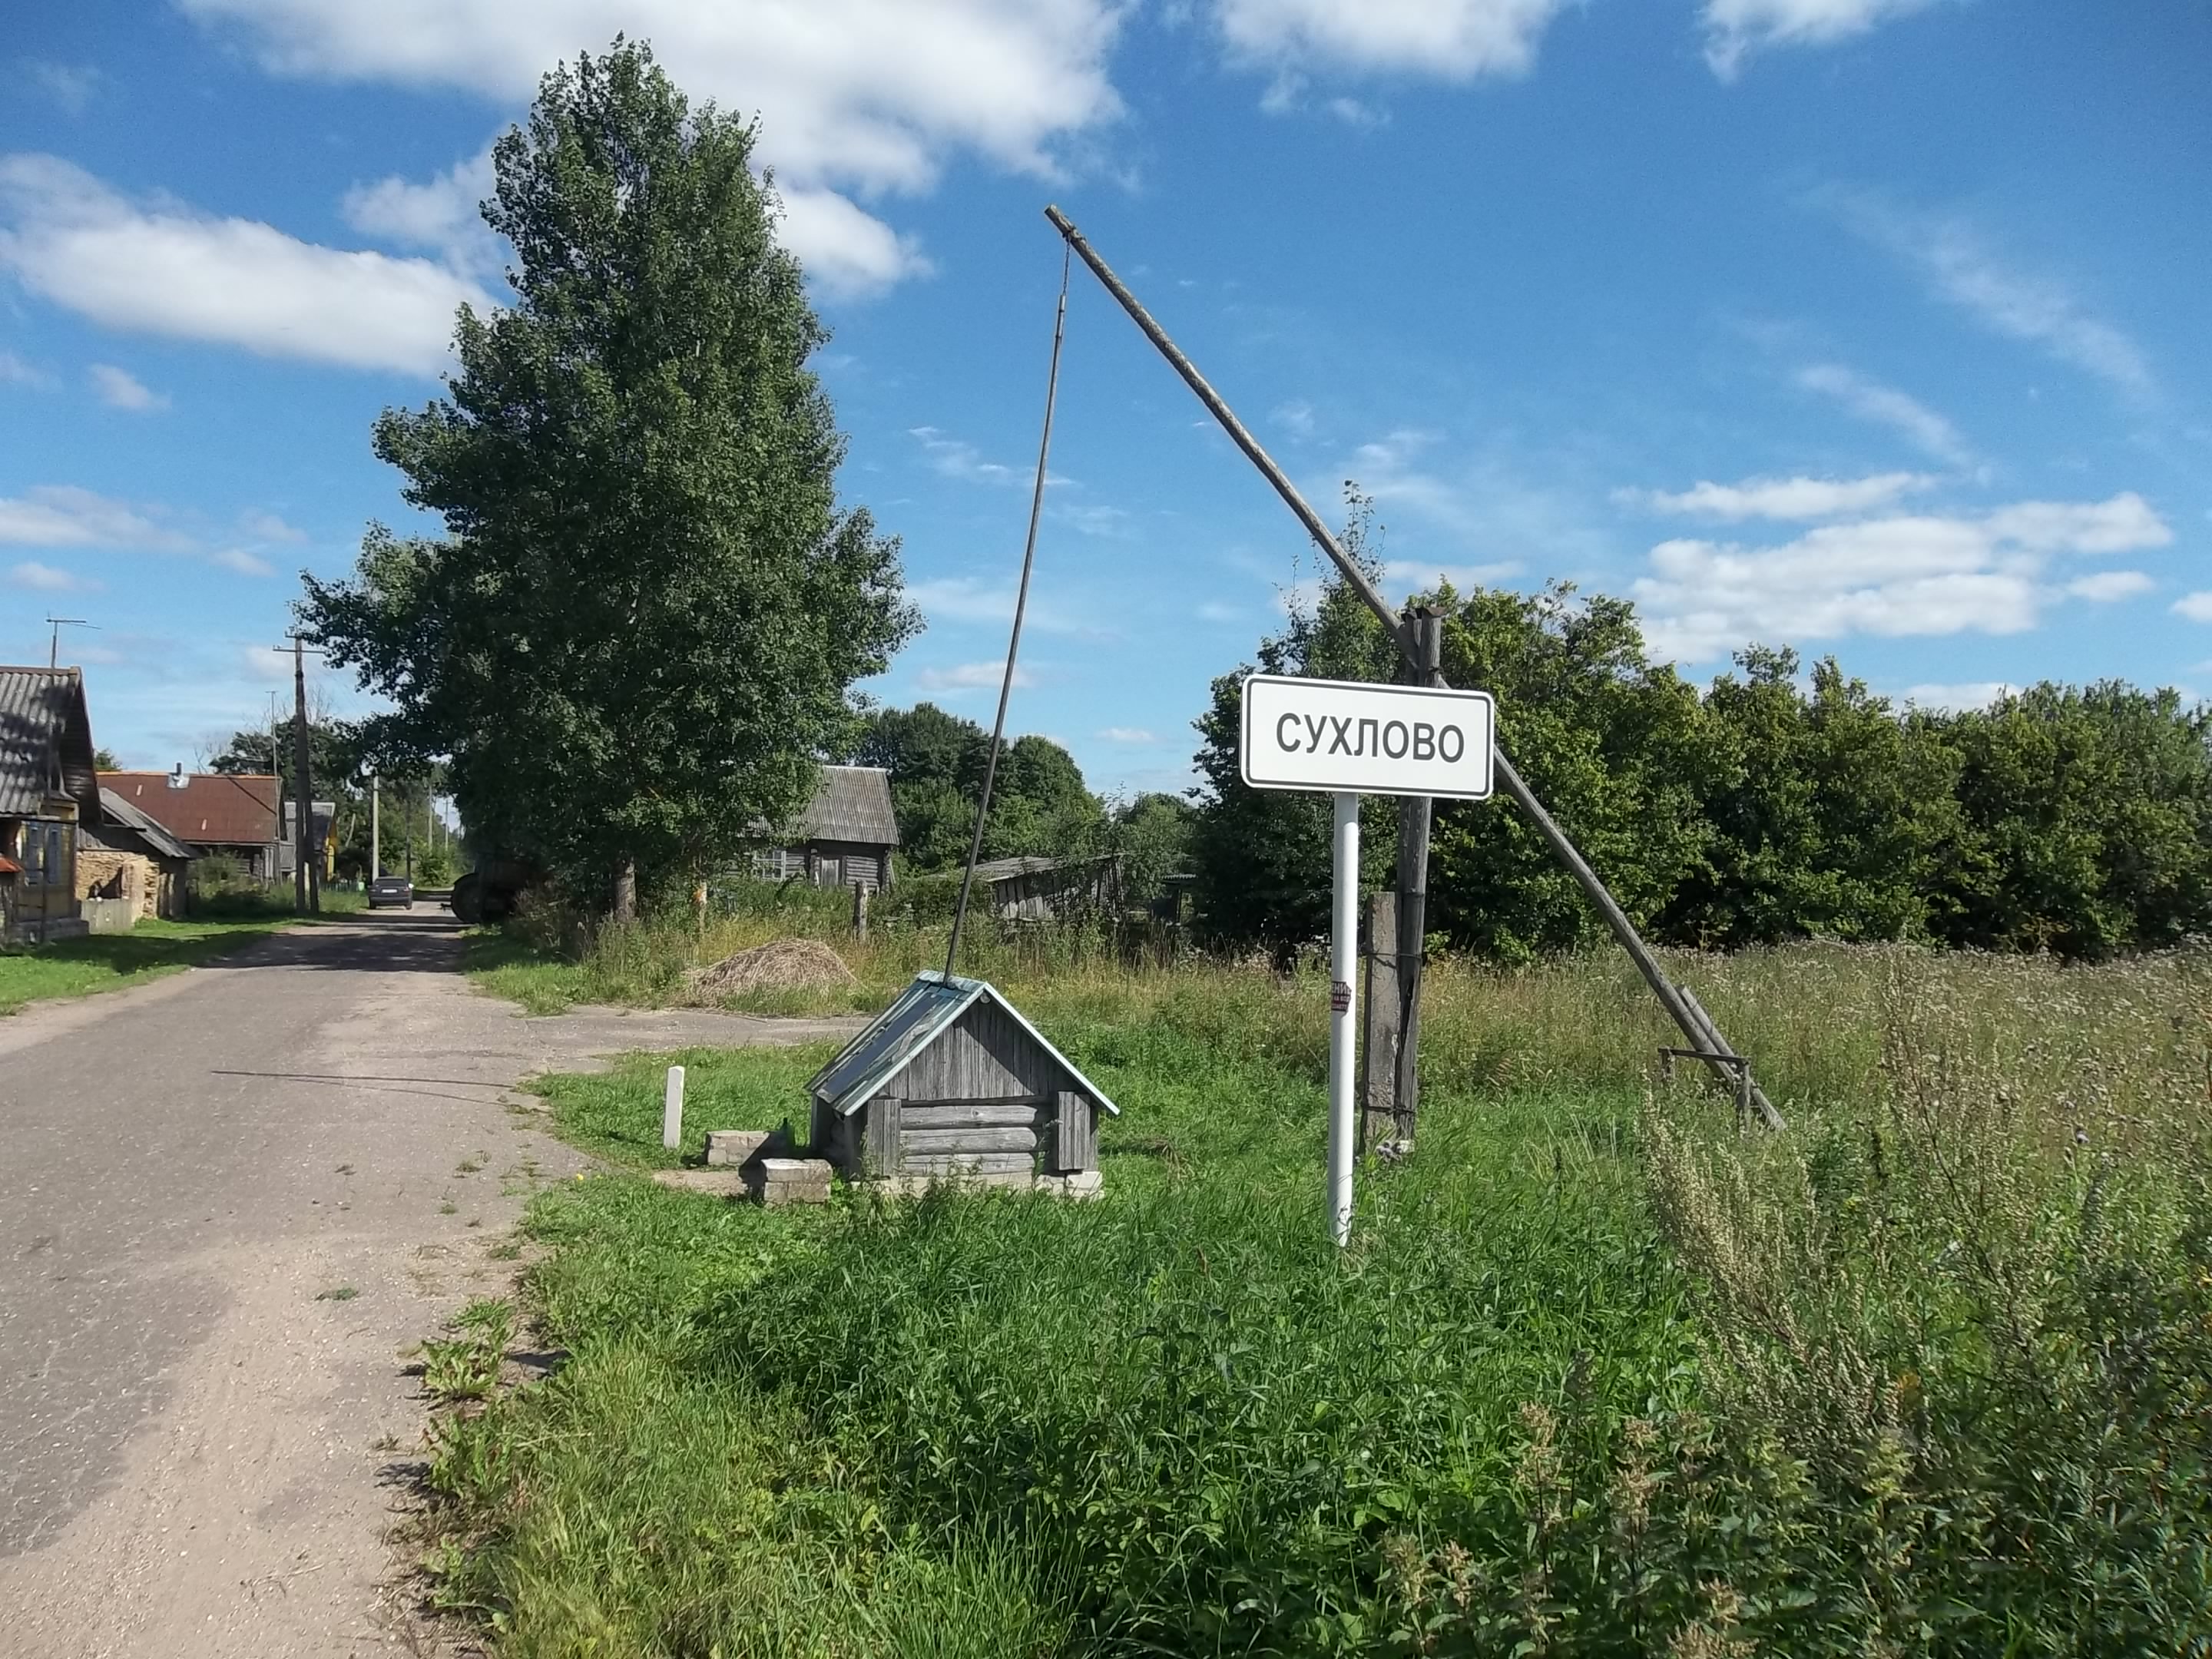 Деревня Сухлово Осташковский район